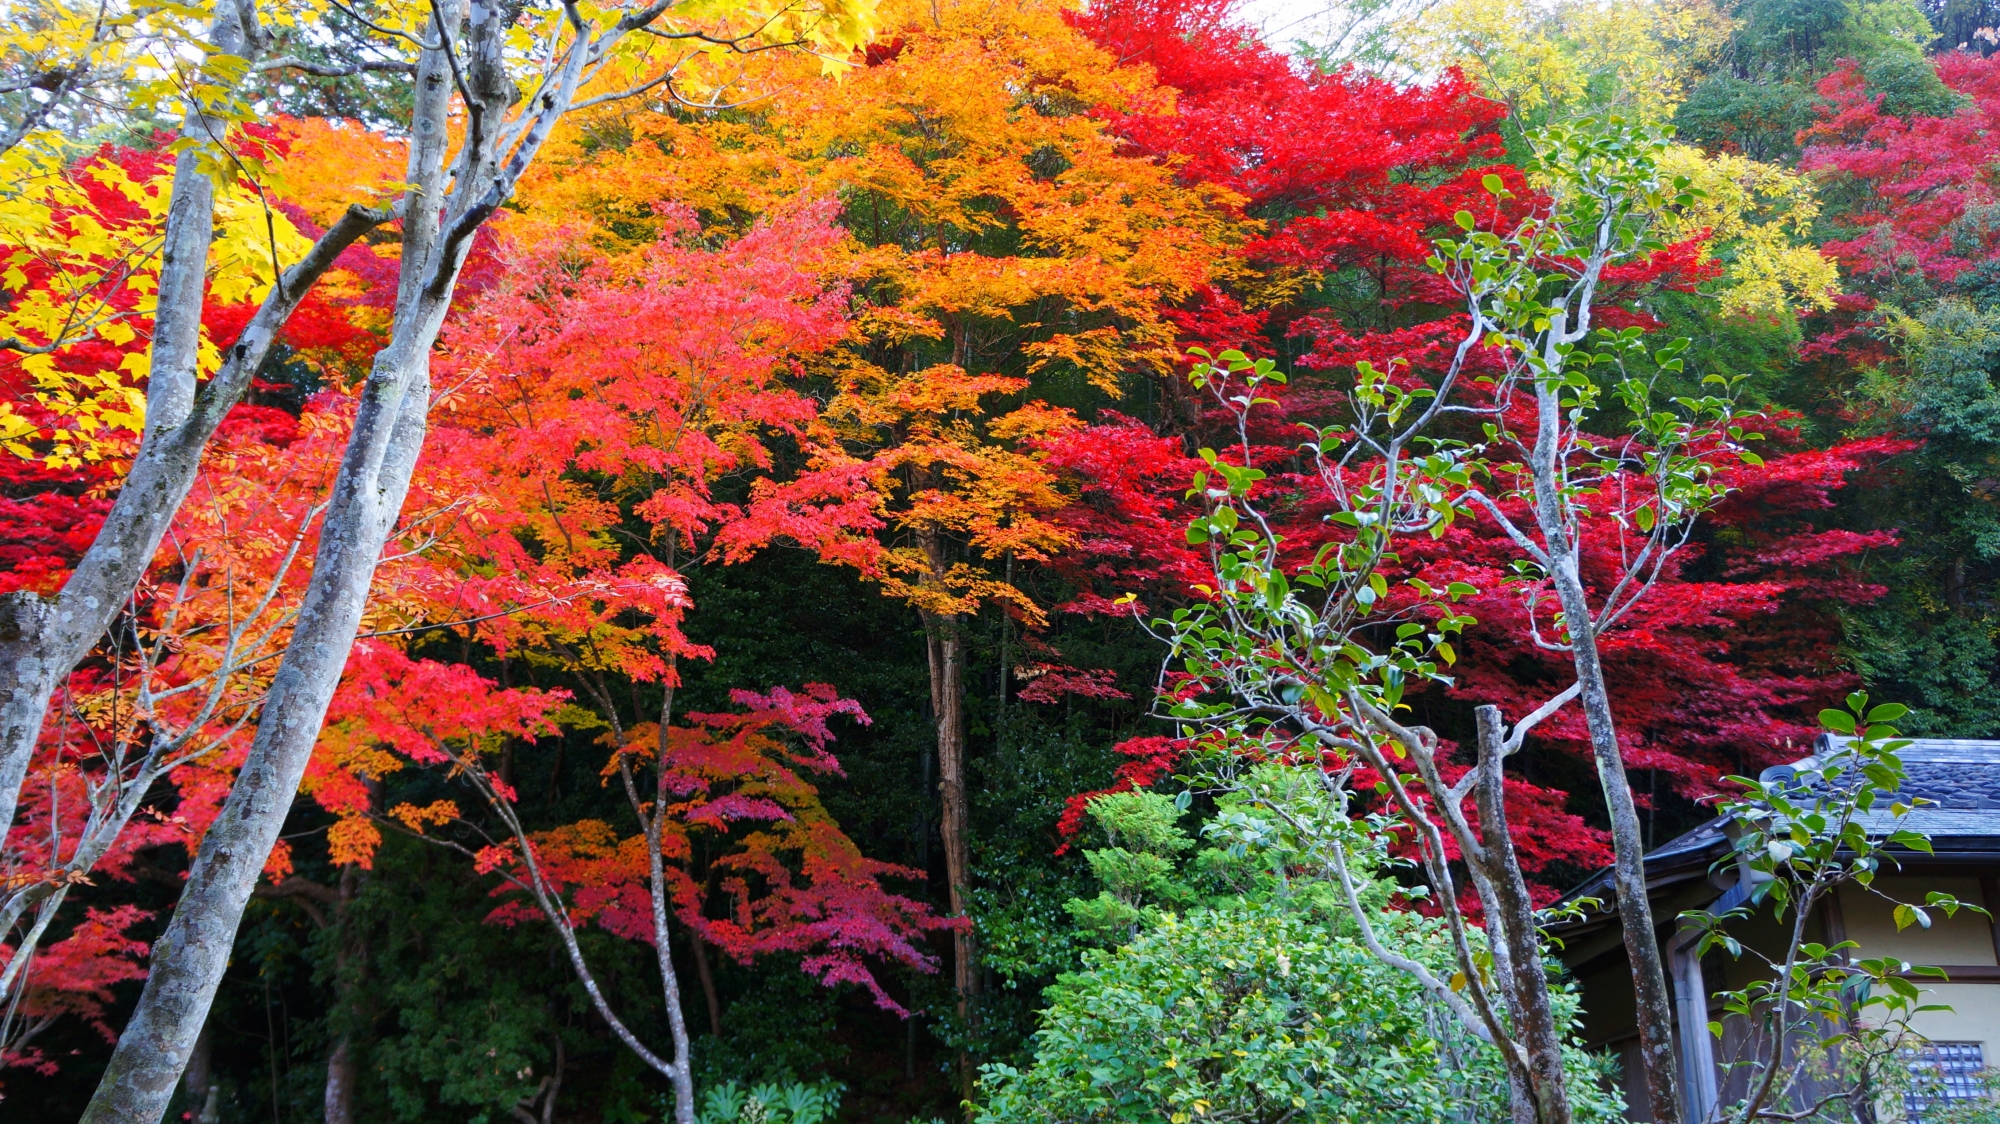 緑や木々の中から燃え上がるような多彩な紅葉